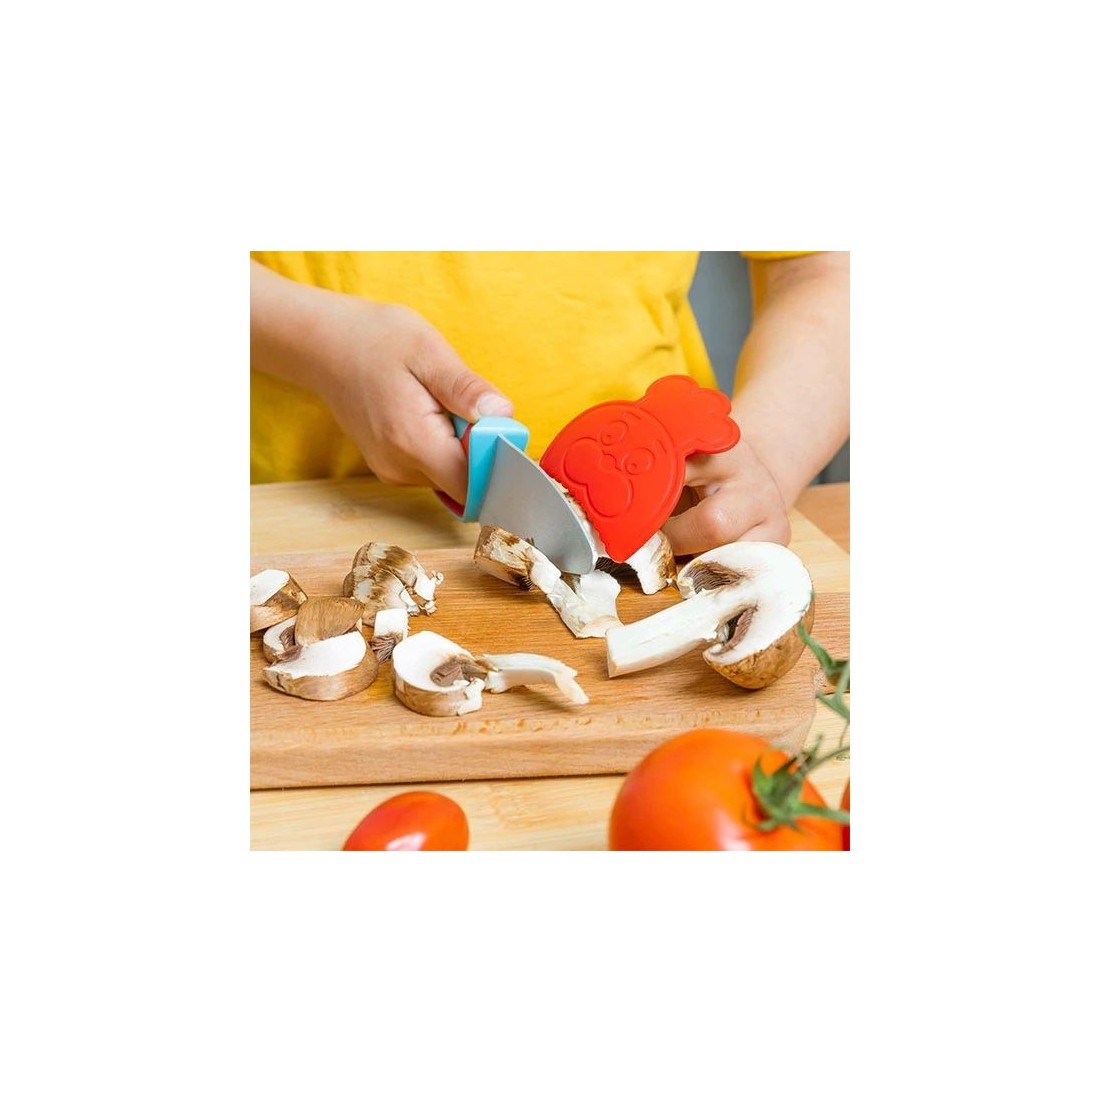 Couteau Chefclub Kids : adapté aux petites mains